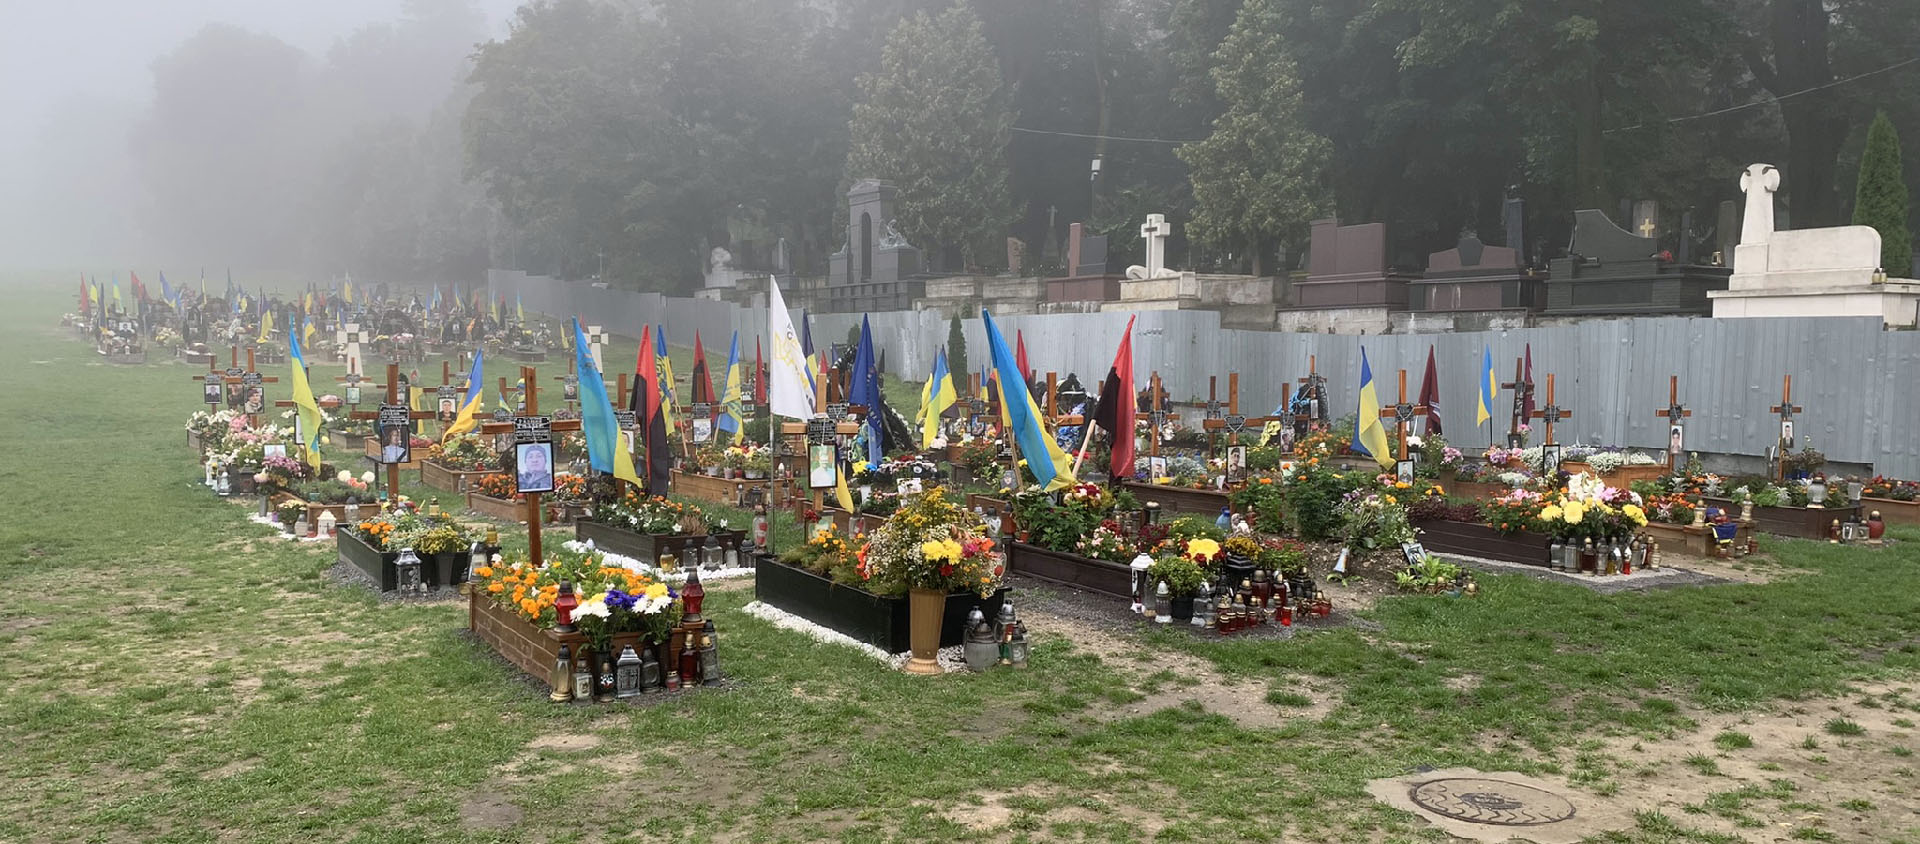 Chaque semaine, de nouvelles tombes sont ajoutées dans le champ de mars, un cimetière où sont enterrés les soldats morts au front | © Jaroslaw Krawiec